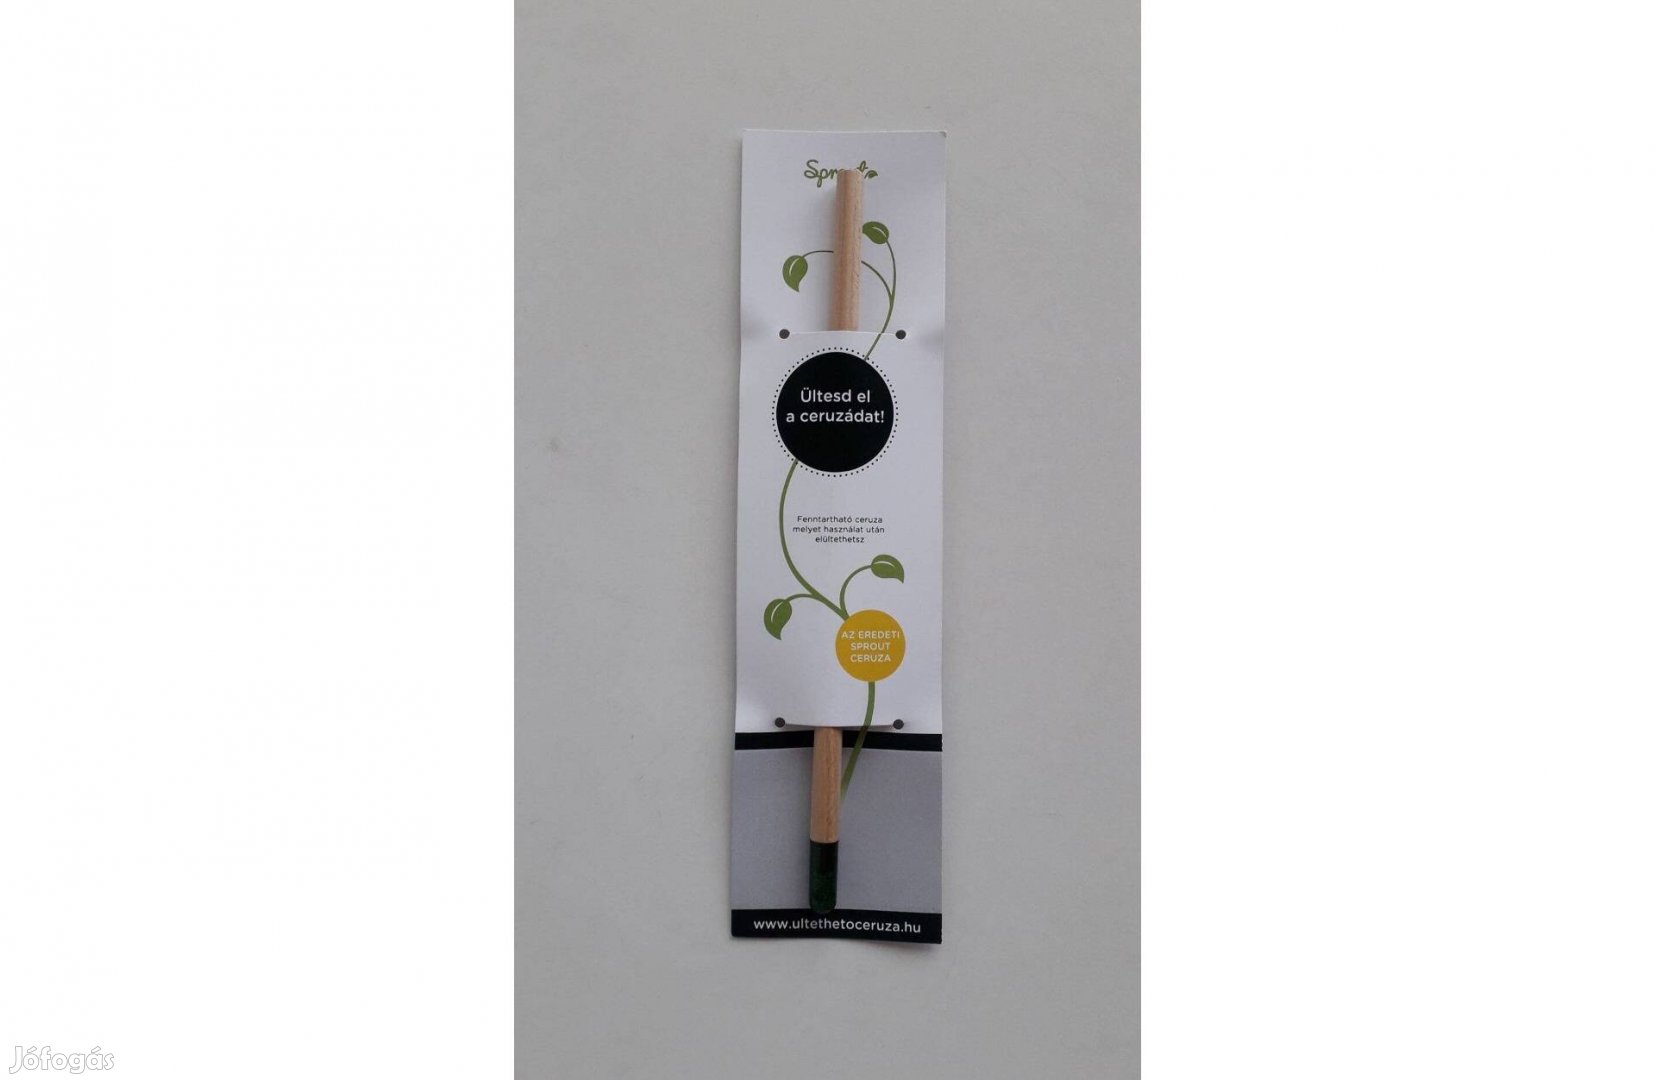 Sprout ültethető ceruza - Zsálya új 19 cm